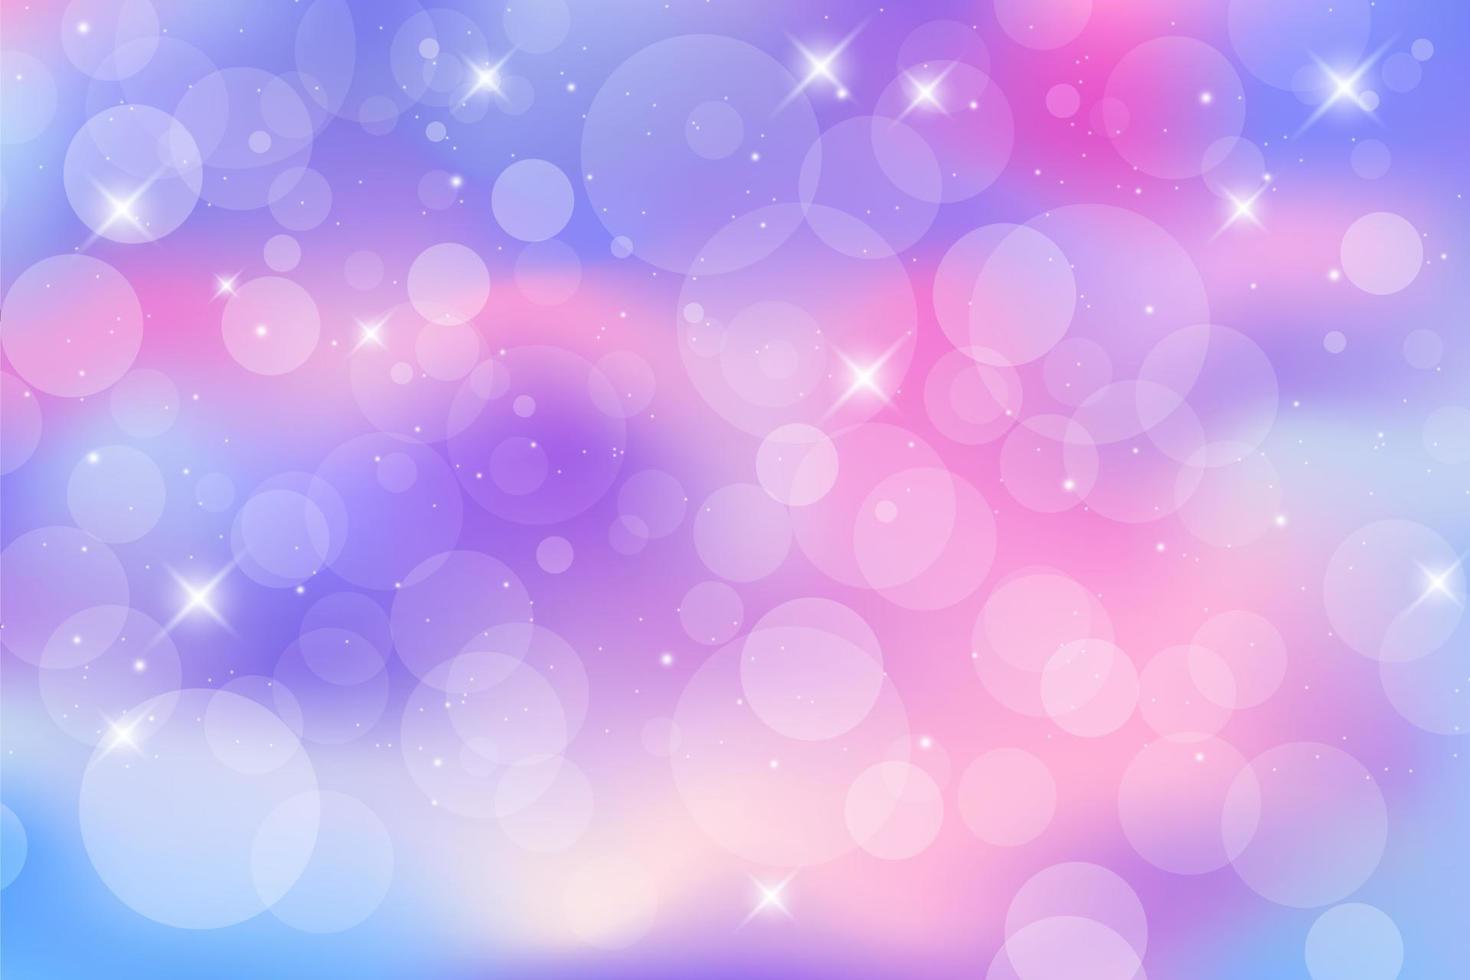 sfondo fantasia arcobaleno. cielo multicolore luminoso con stelle e bokeh. illustrazione olografica nei colori pastello viola e rosa. carta da parati girly simpatico cartone animato. vettore. vettore